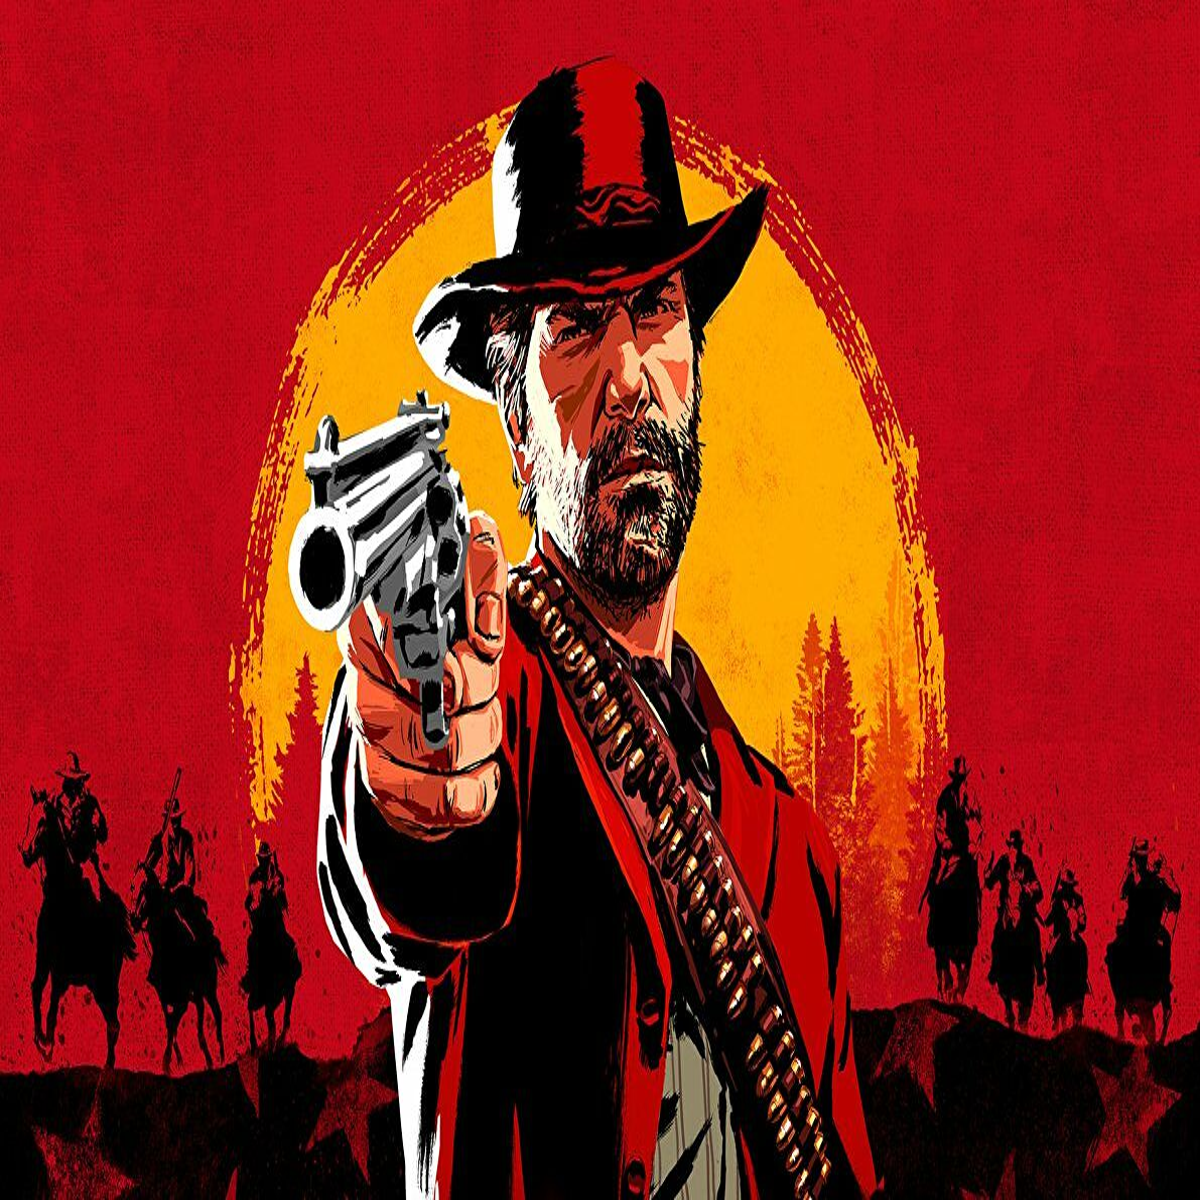 Red Dead Redemption 2 comemora 4 anos sem atualização PS5 e Xbox